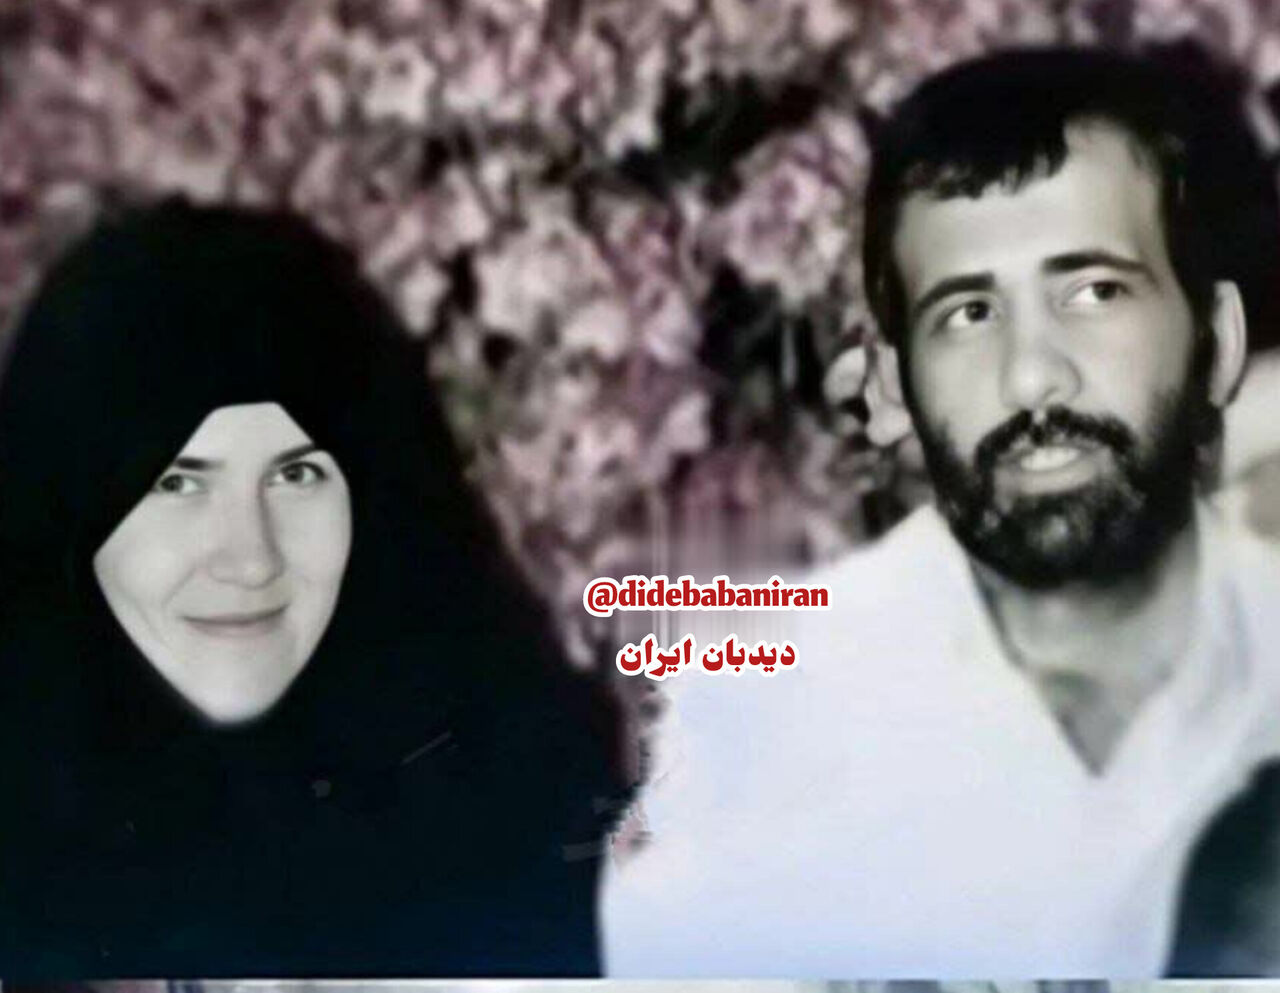 طخانواده مسعود پزشکیان را بهتر بشناسید / آخرین عکس پزشکیان و همسرش قبل از تصادف